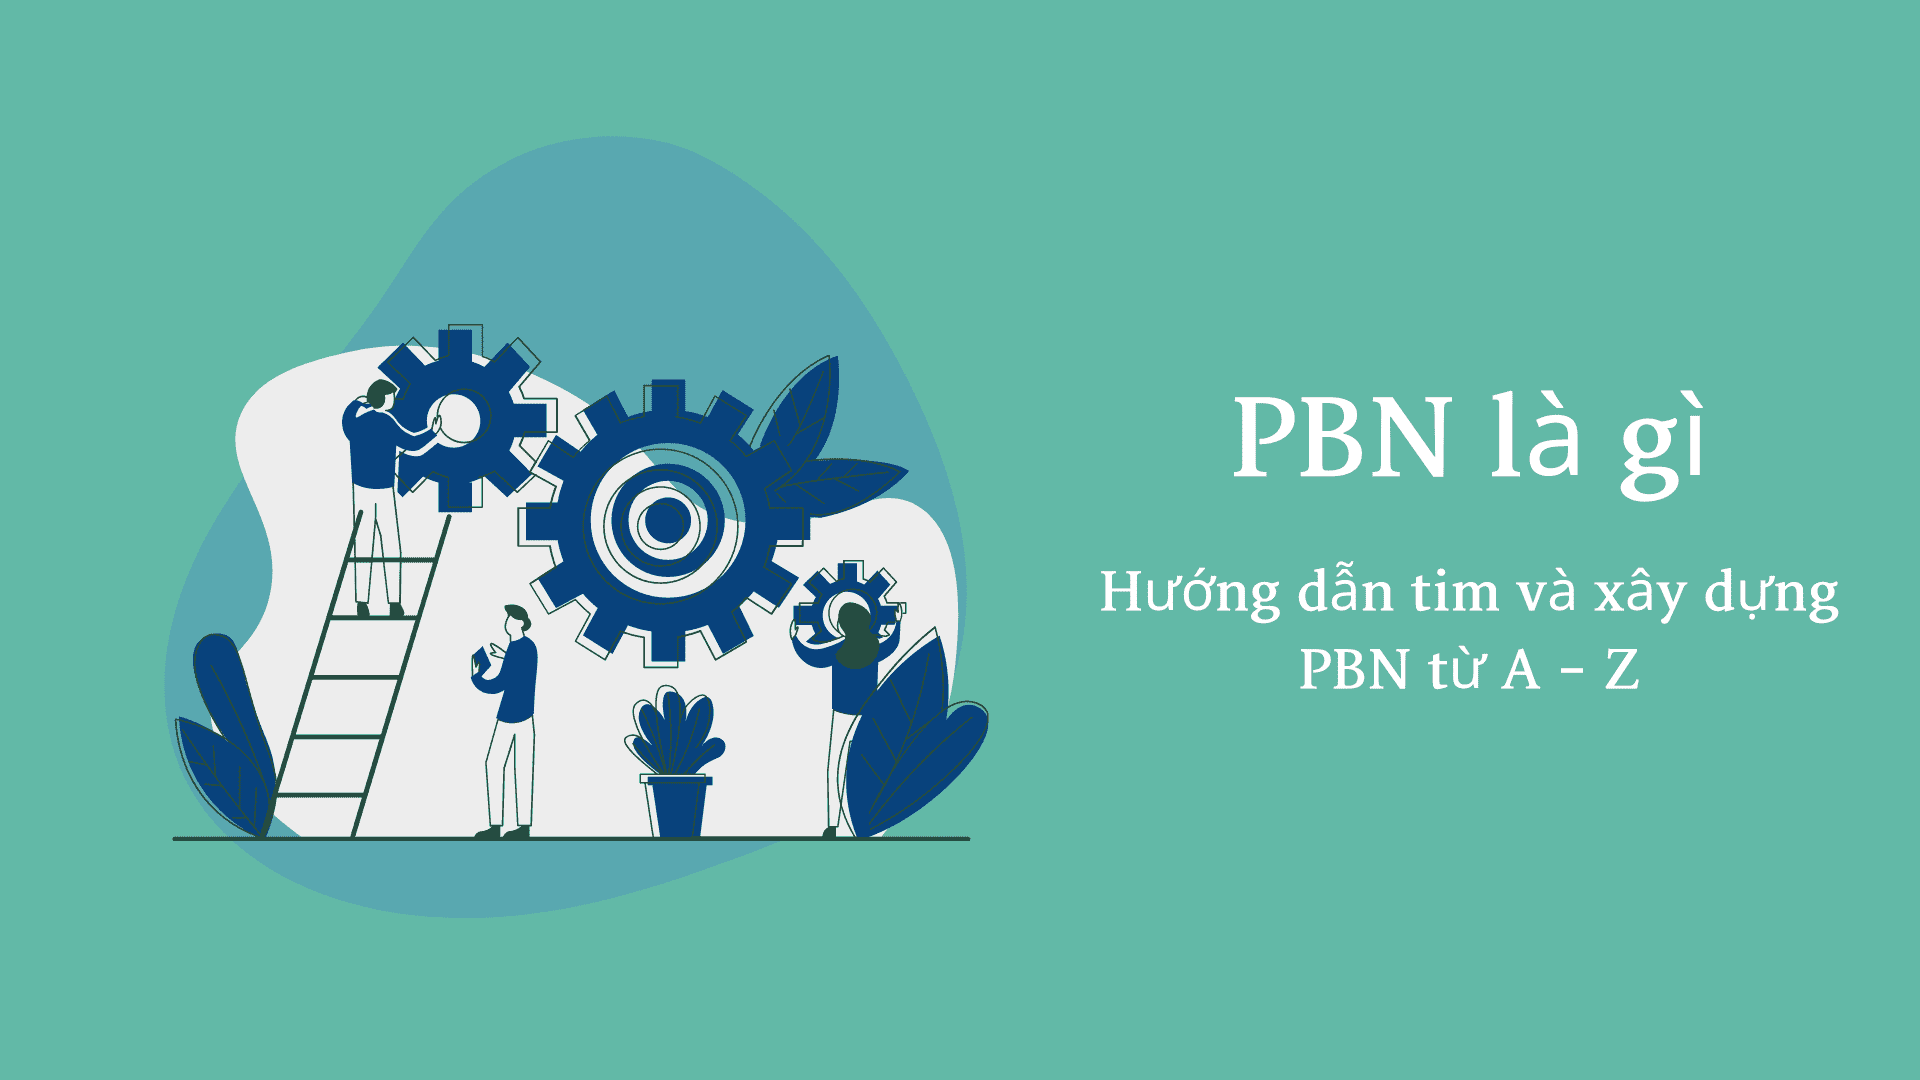 PBN là gì?